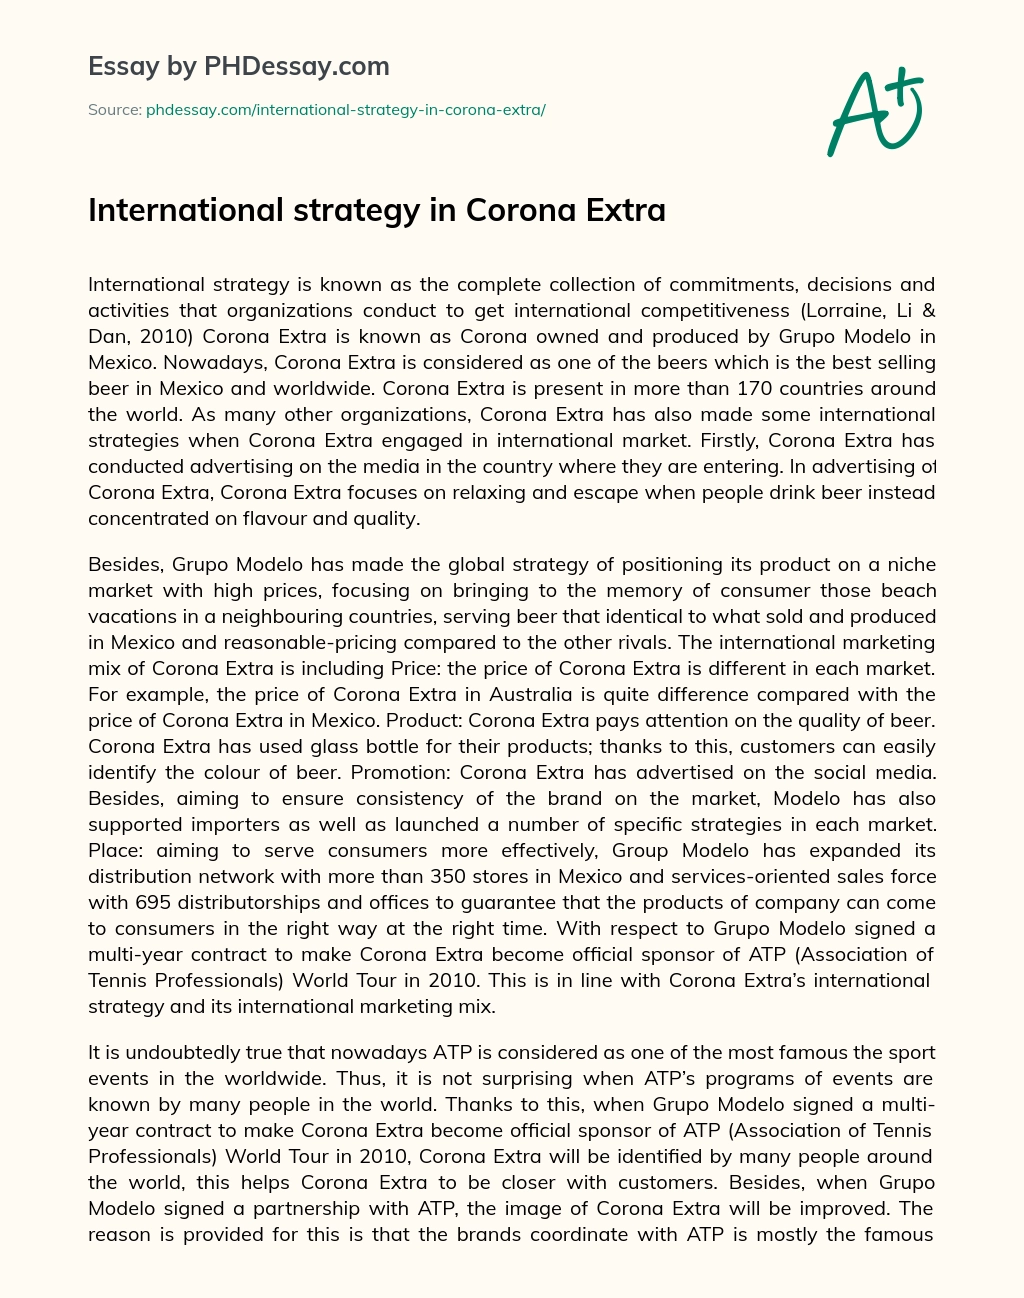 International strategy in Corona Extra essay